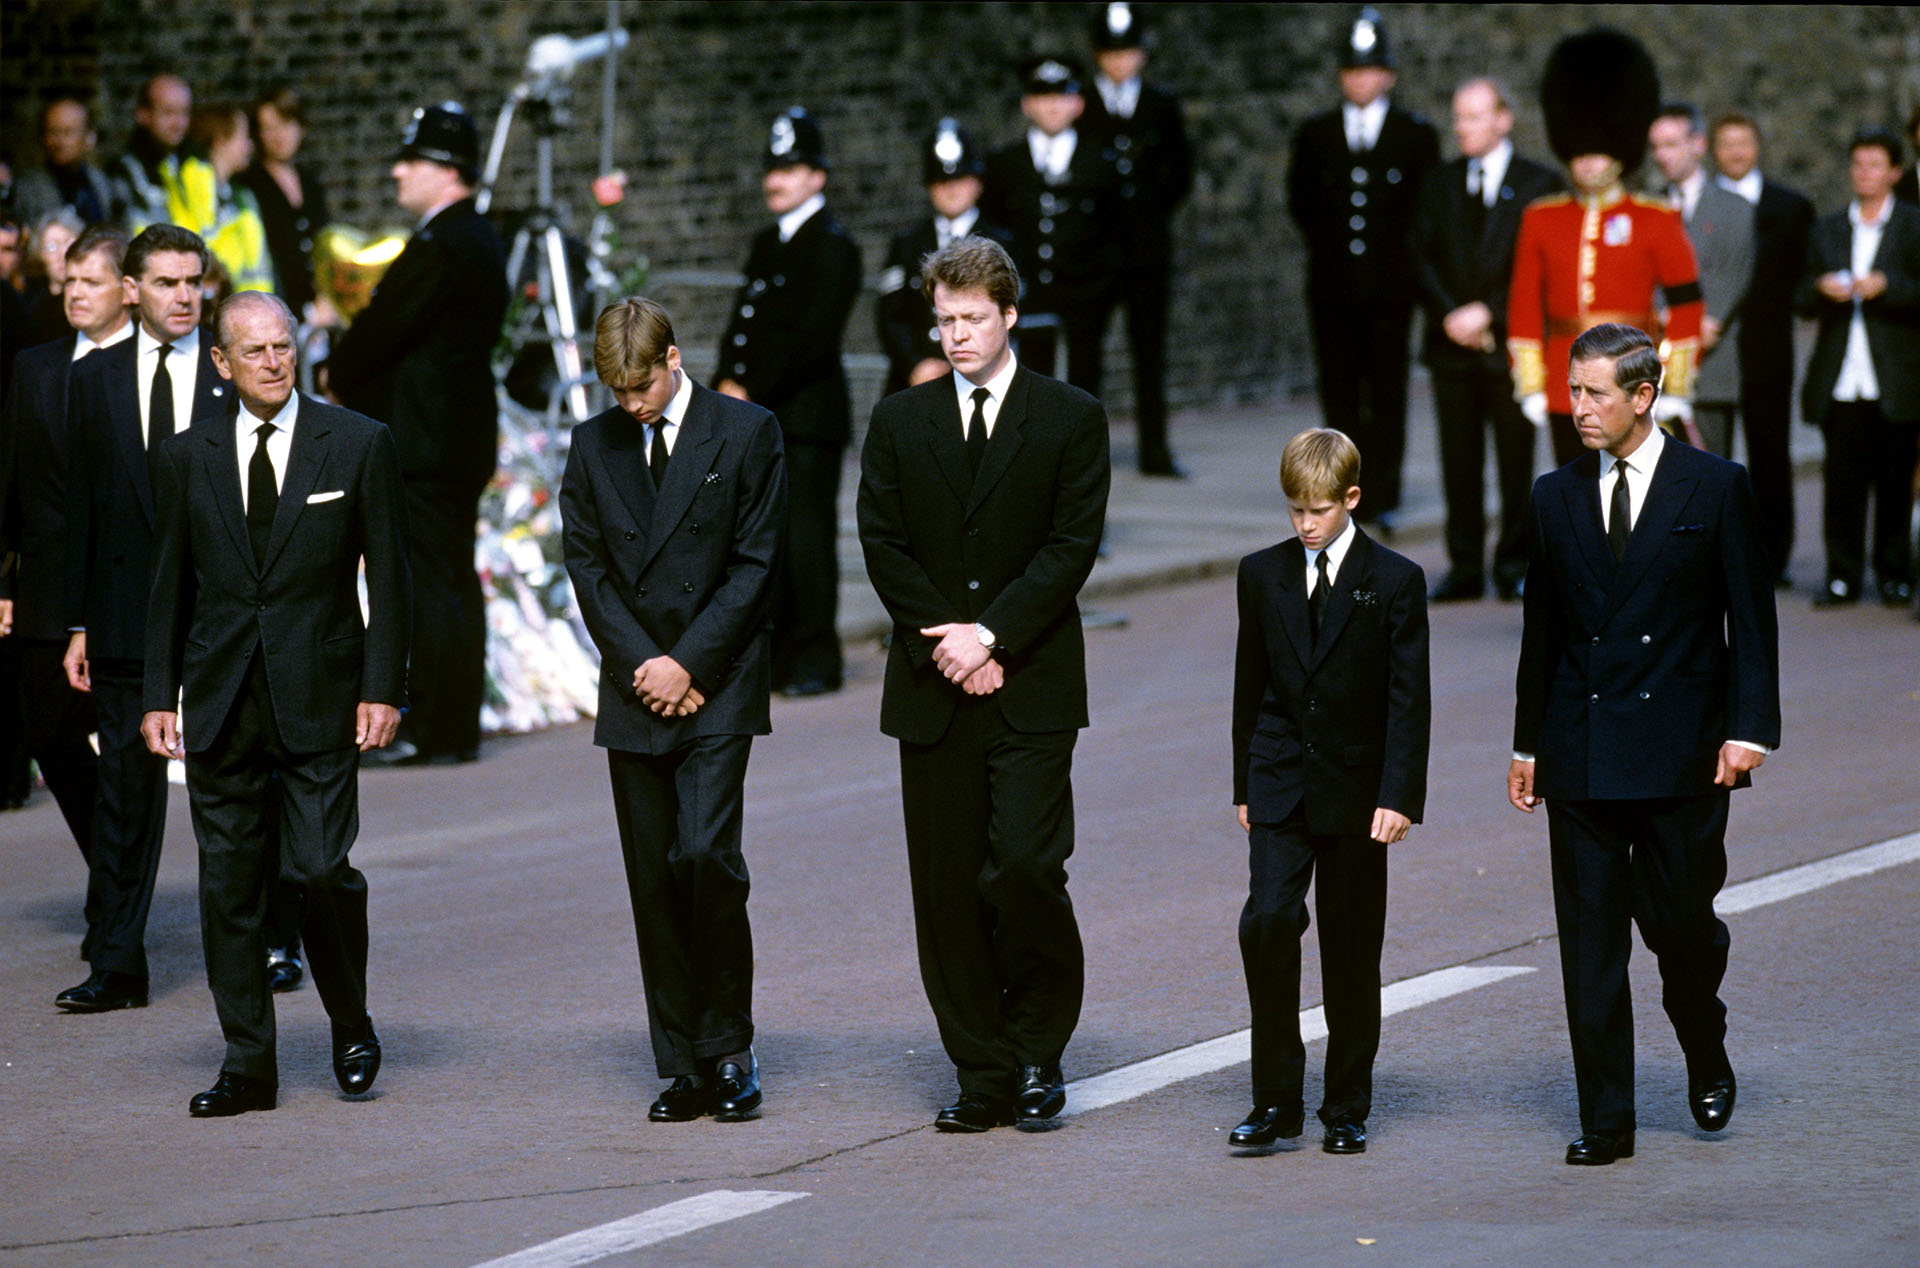 Lady Di falleció el 31 de agosto de 1997 y su funeral se ofició en Londres una semana después, el 6 de septiembre. El evento paralizó Londres, donde aproximadamente un millón de personas se acercaron a ver pasar el cortejo fúnebre,  (The Grosby Group)